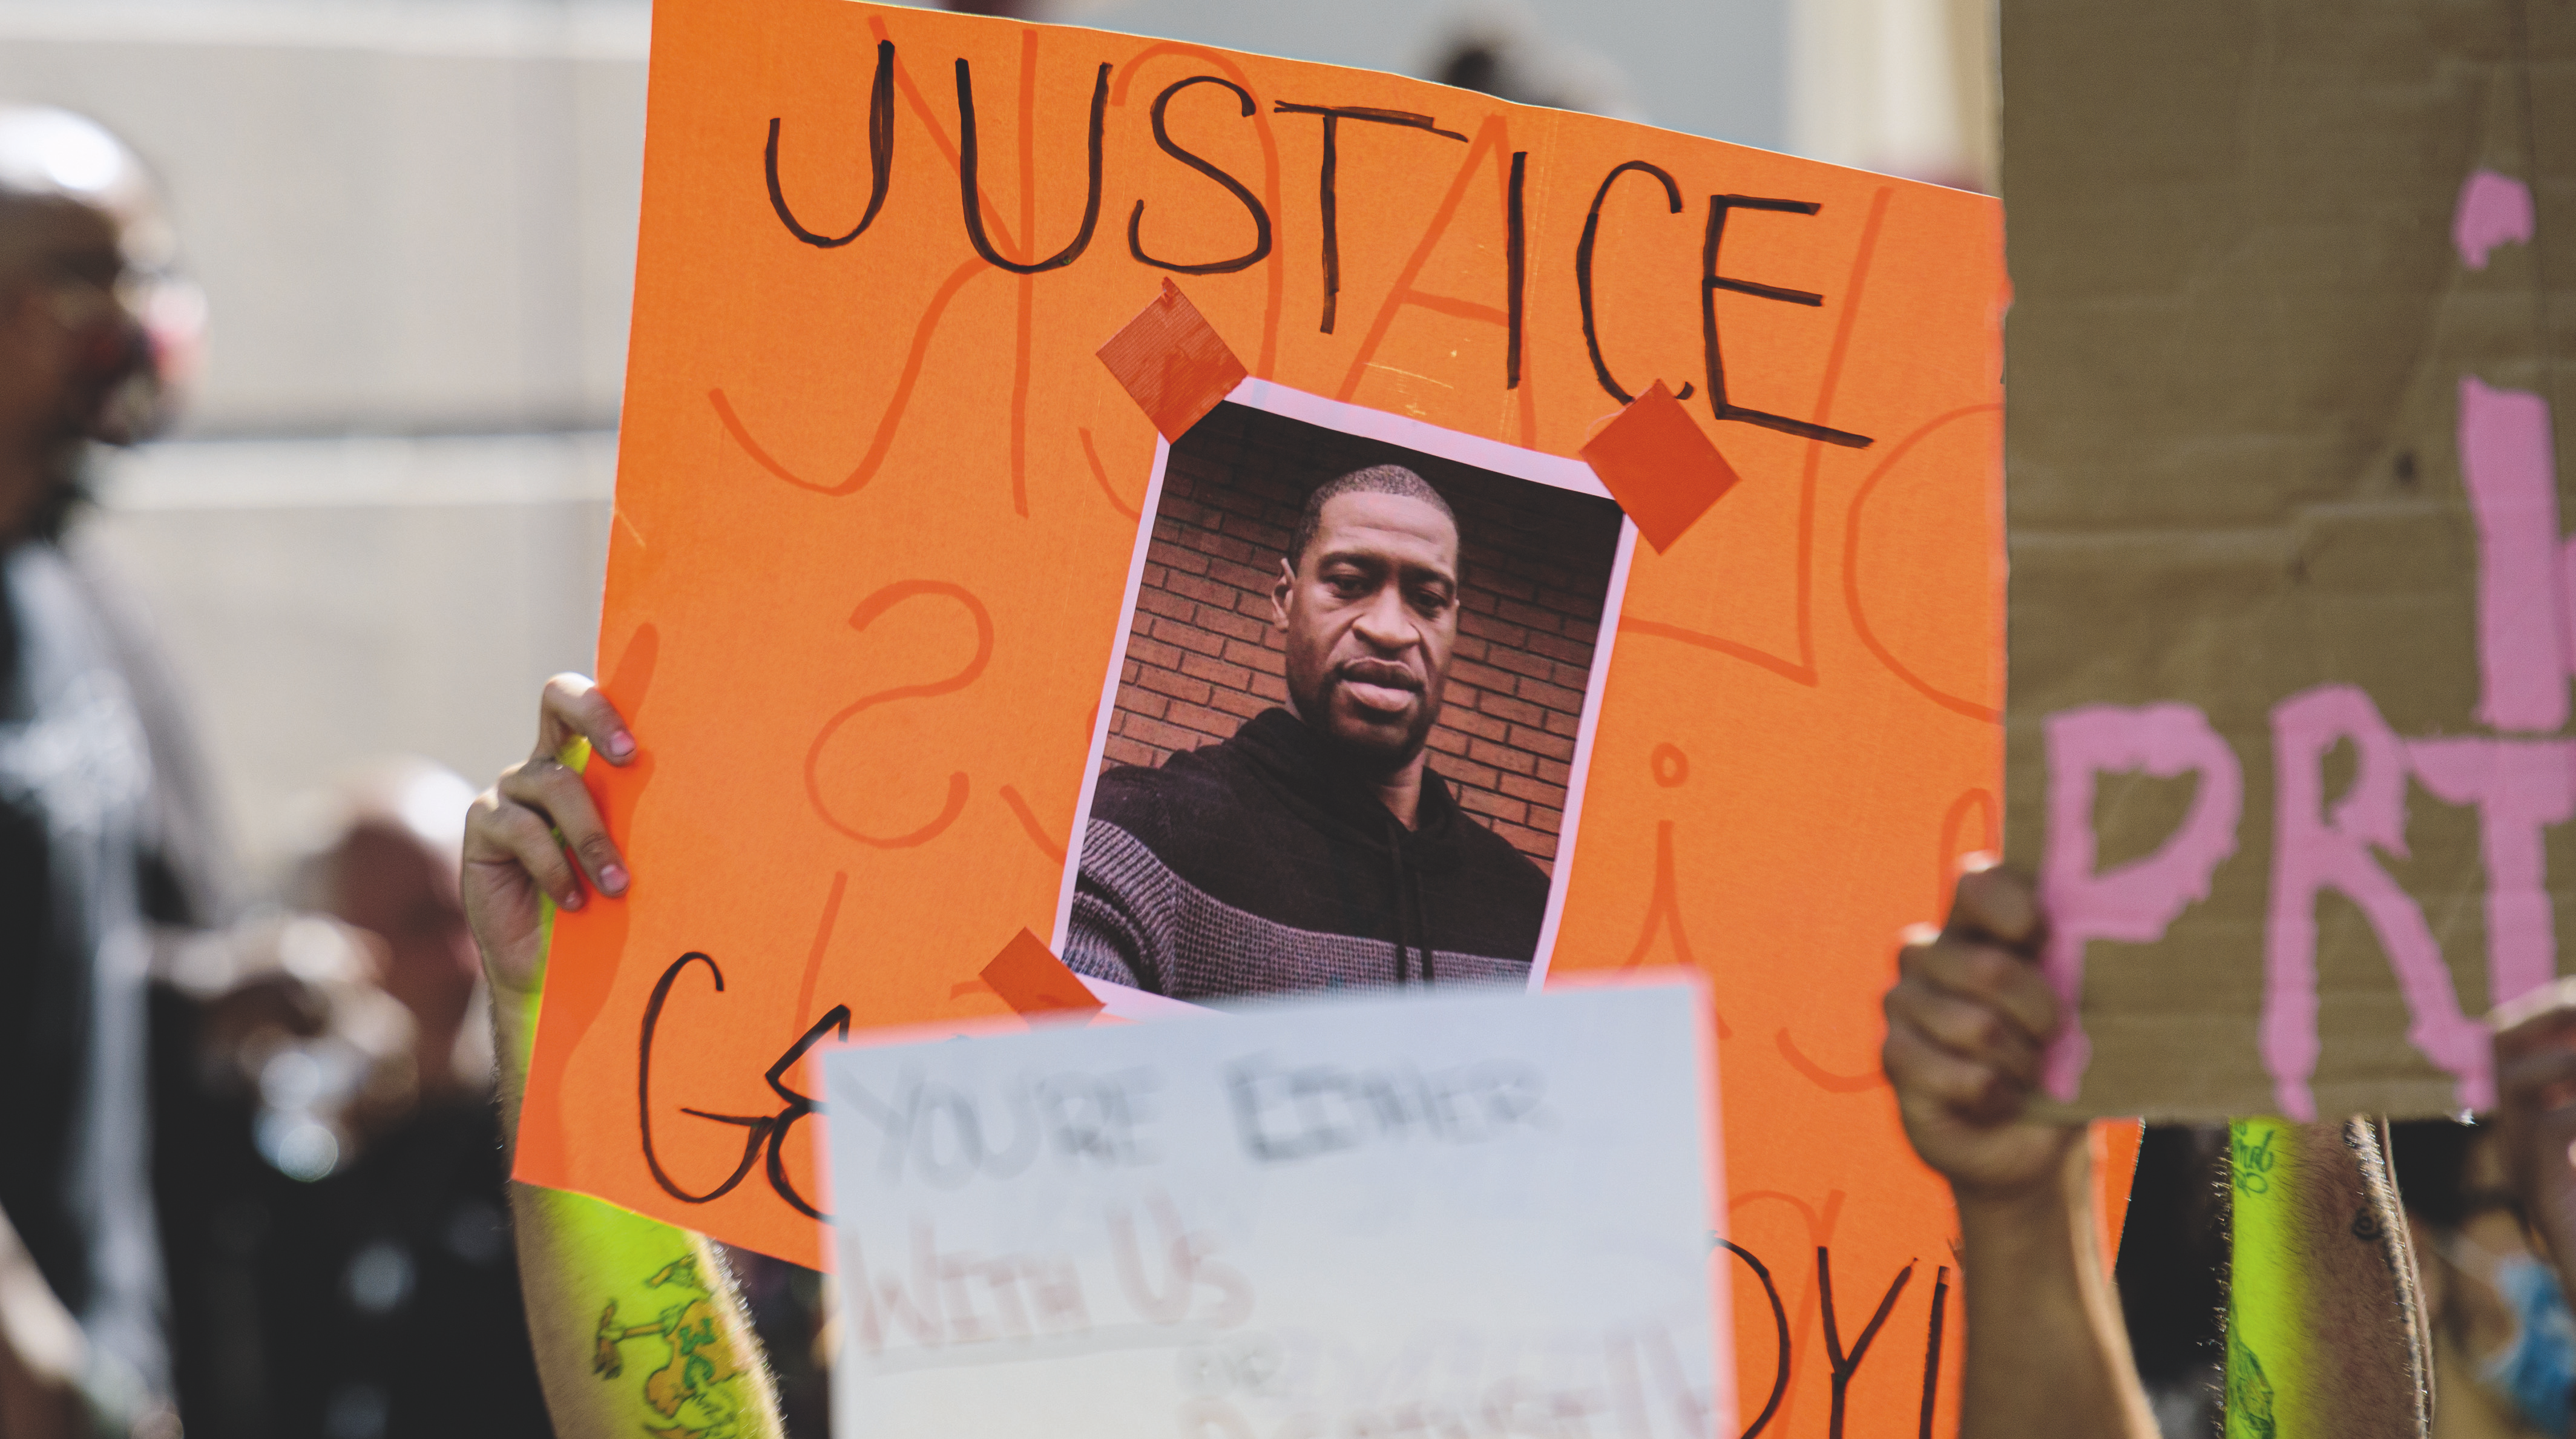 Le décès de George Floyd, en mai 2020, a donné lieu à de nombreuses manifestations, comme ici, à Miami, et a visibilisé le mouvement Black Lives Matter. L’essayiste y consacre un chapitre dans son ouvrage.SHUTTERSTOCK